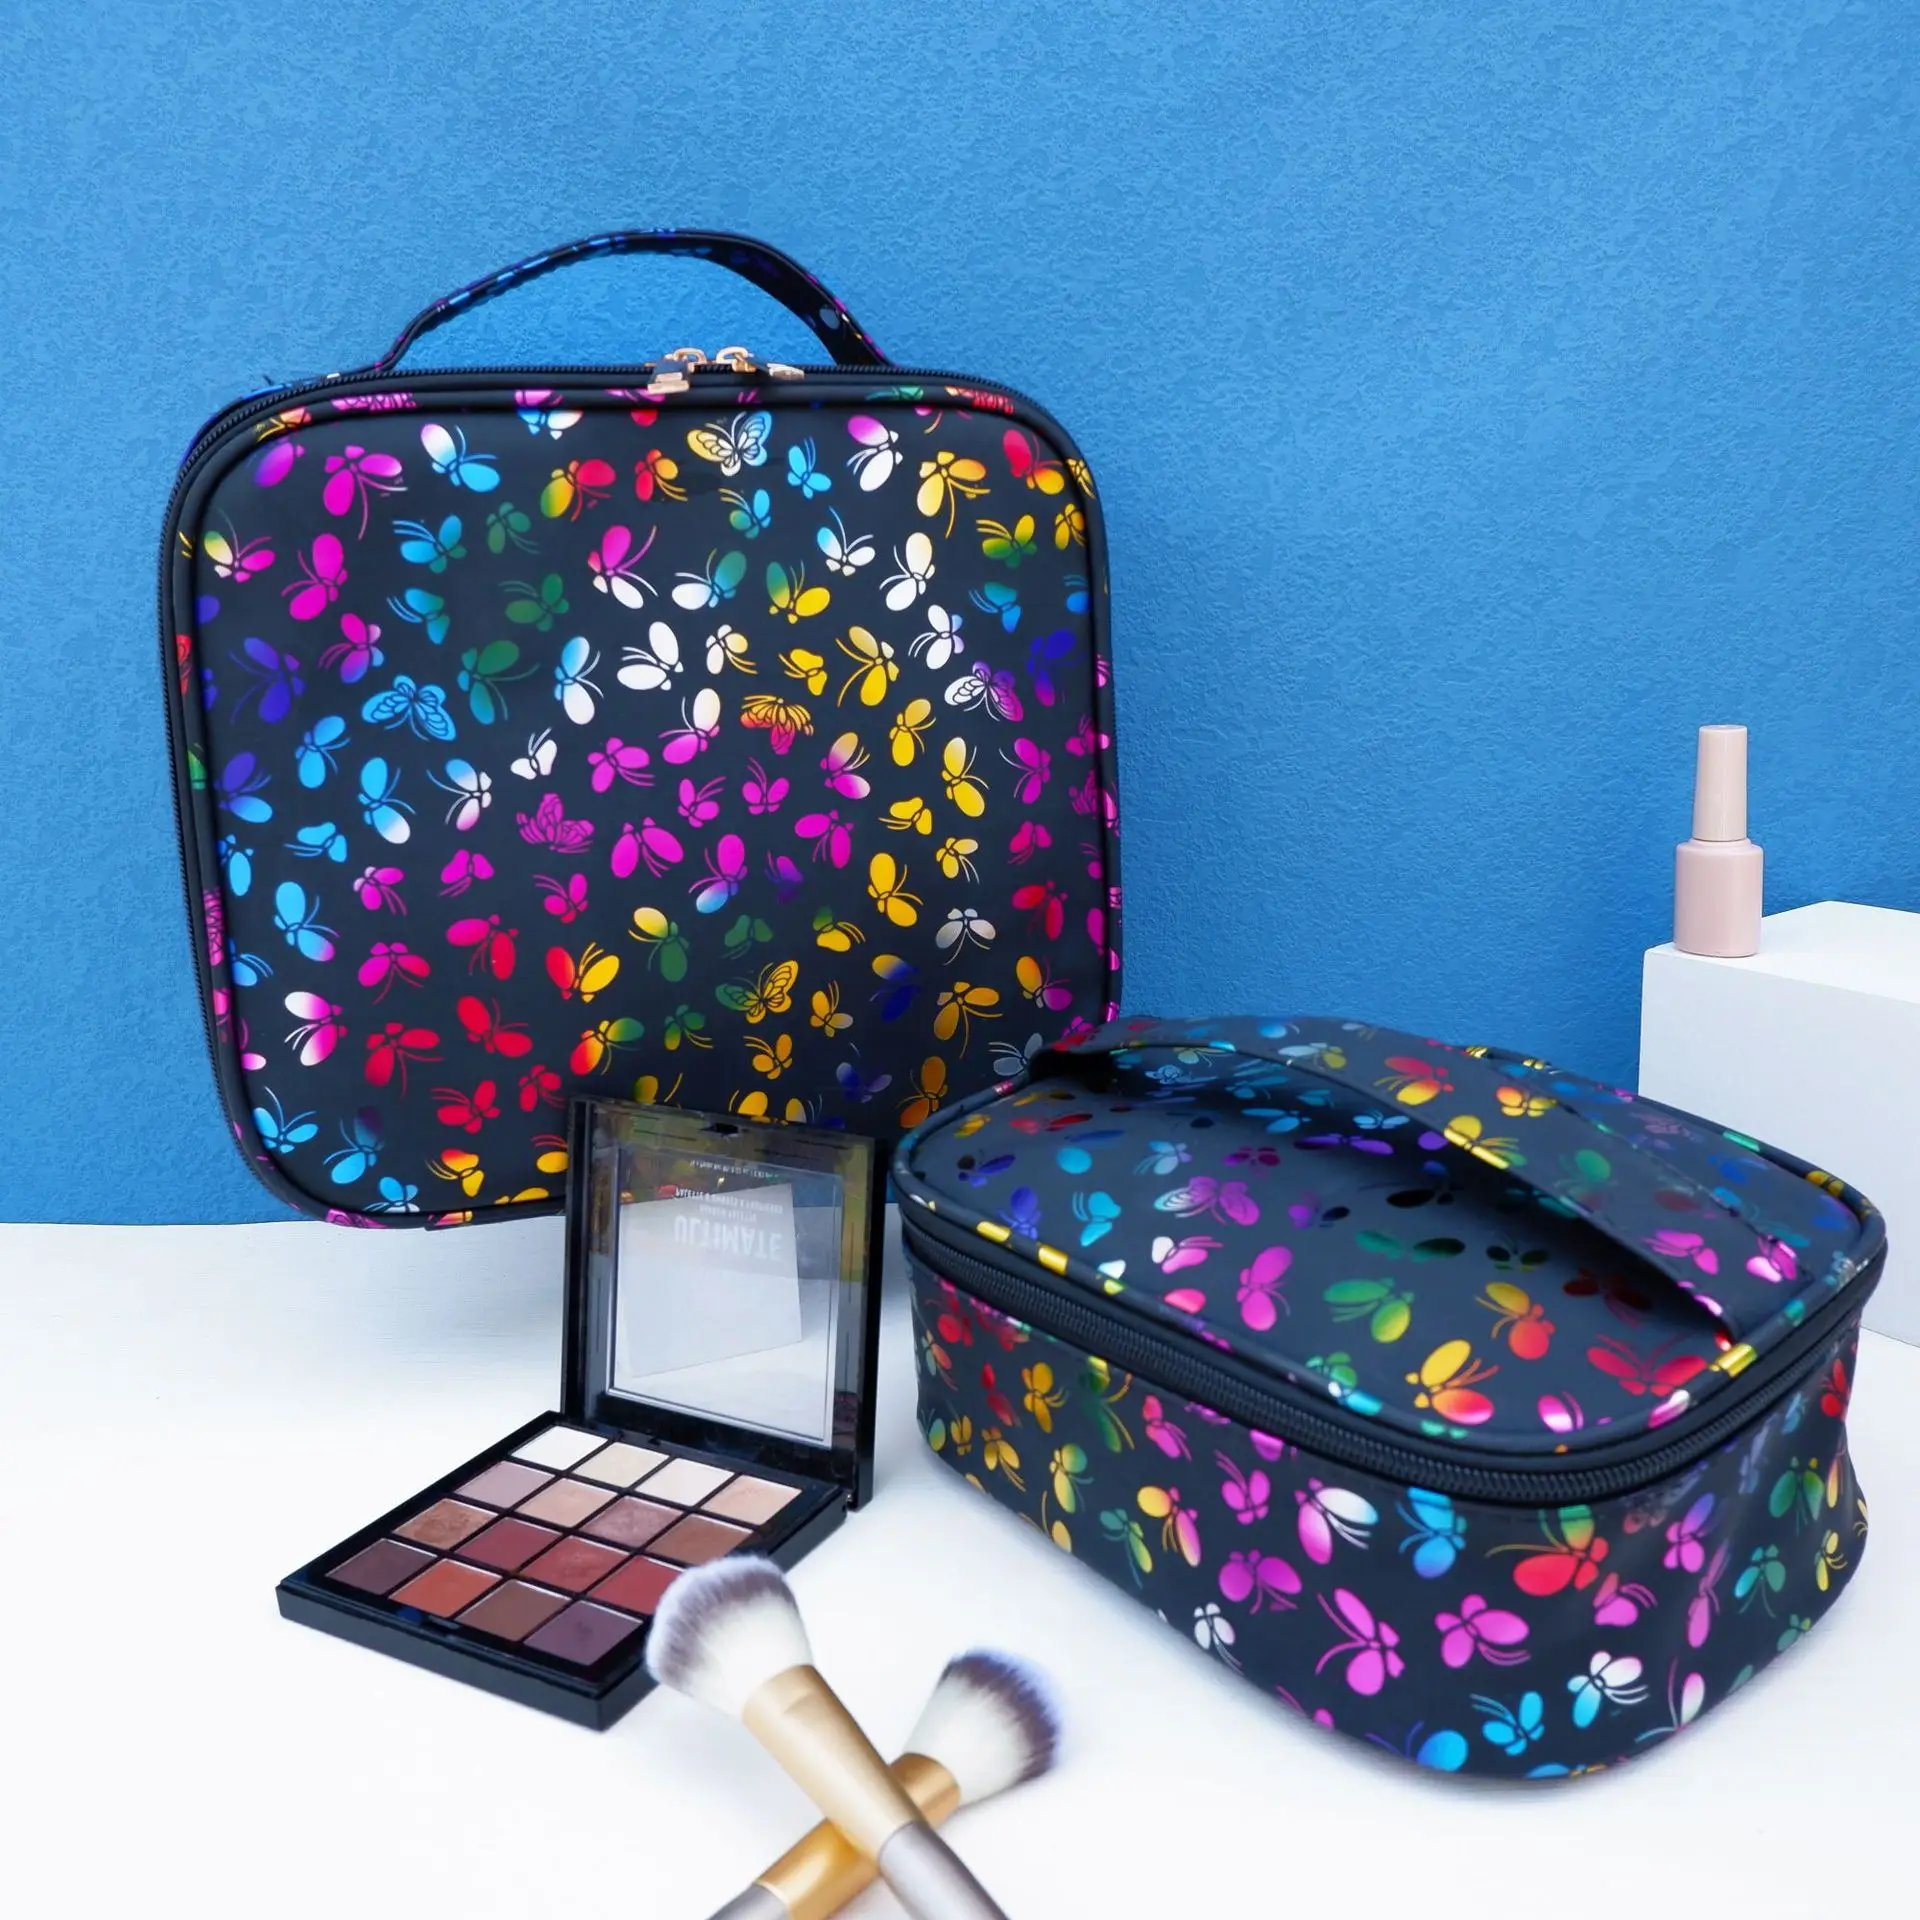 

Maleta Maquiagem Trousse De Toilette Organizer Clutch Black Makeup Case With Handle Butterfly Cosmetic Makeup Bag, As show